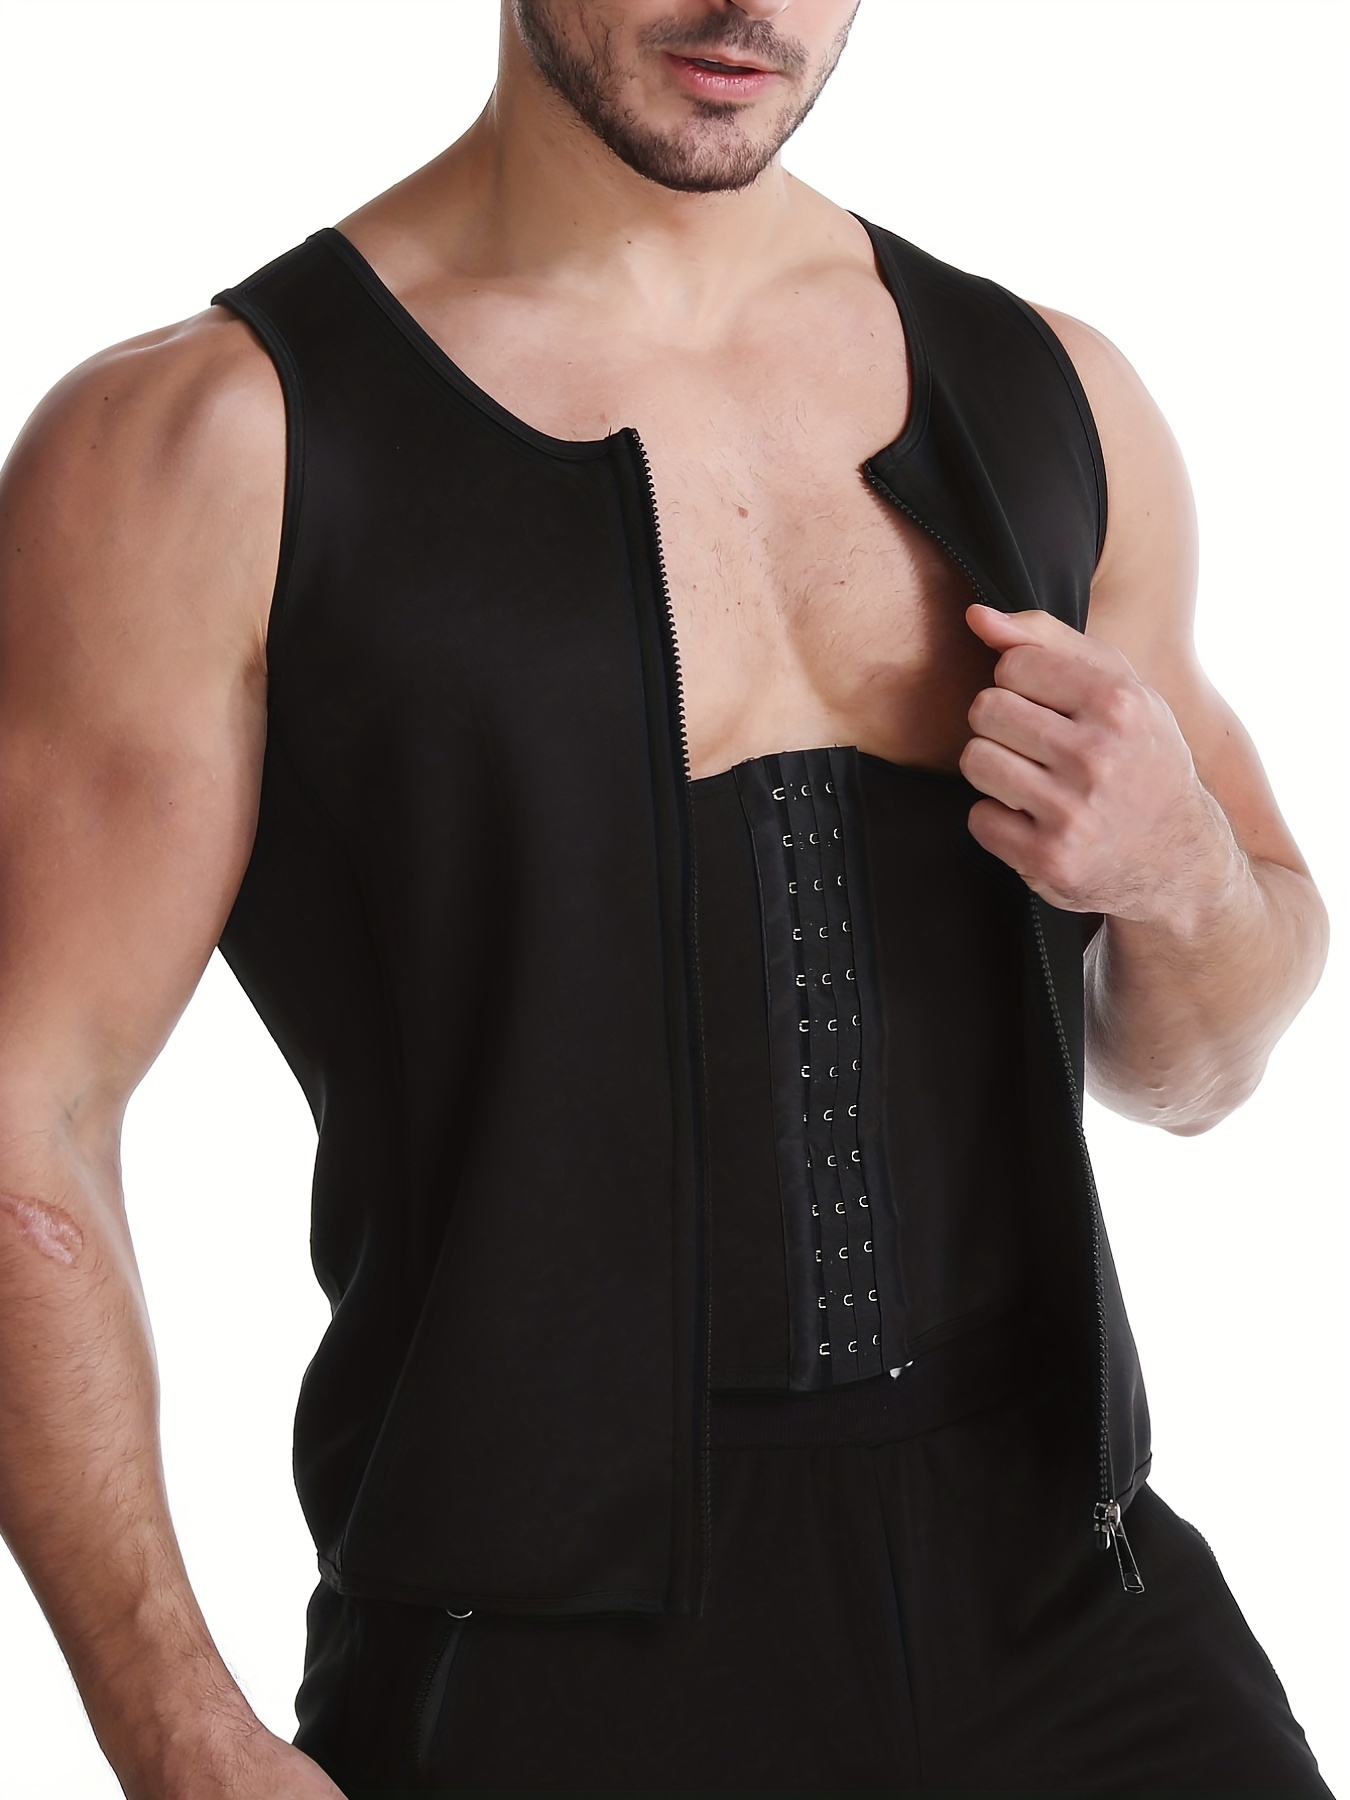 Men's Adjustable Abdomen-restraining Vest With Adjustable Exhaust Port,  Sweat Sauna Vest, Waist-restraining Body Shaping Clothes, Yoga Shaping  Clothes